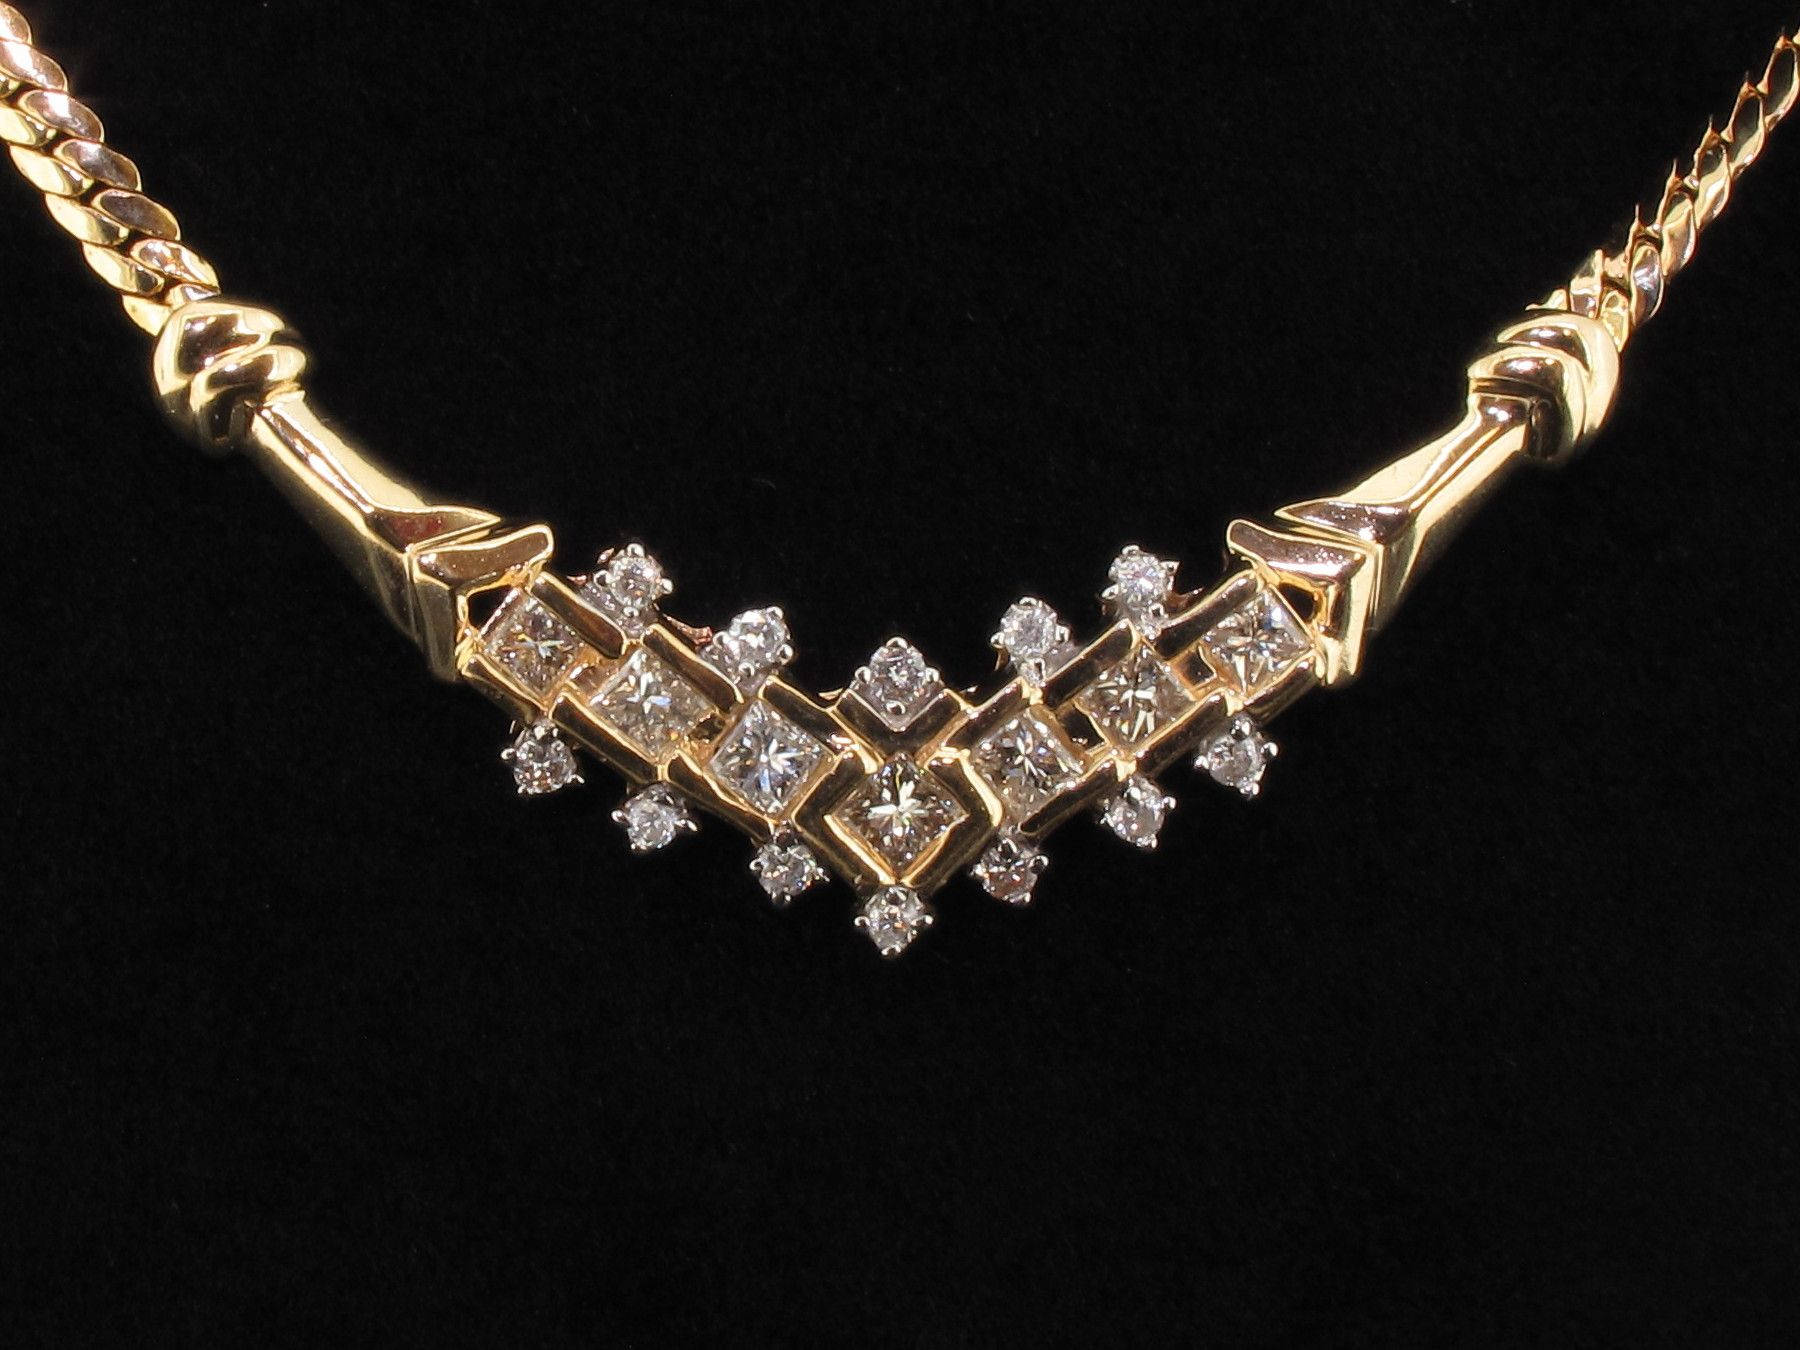 Jewelry Necklace Studded With Diamonds